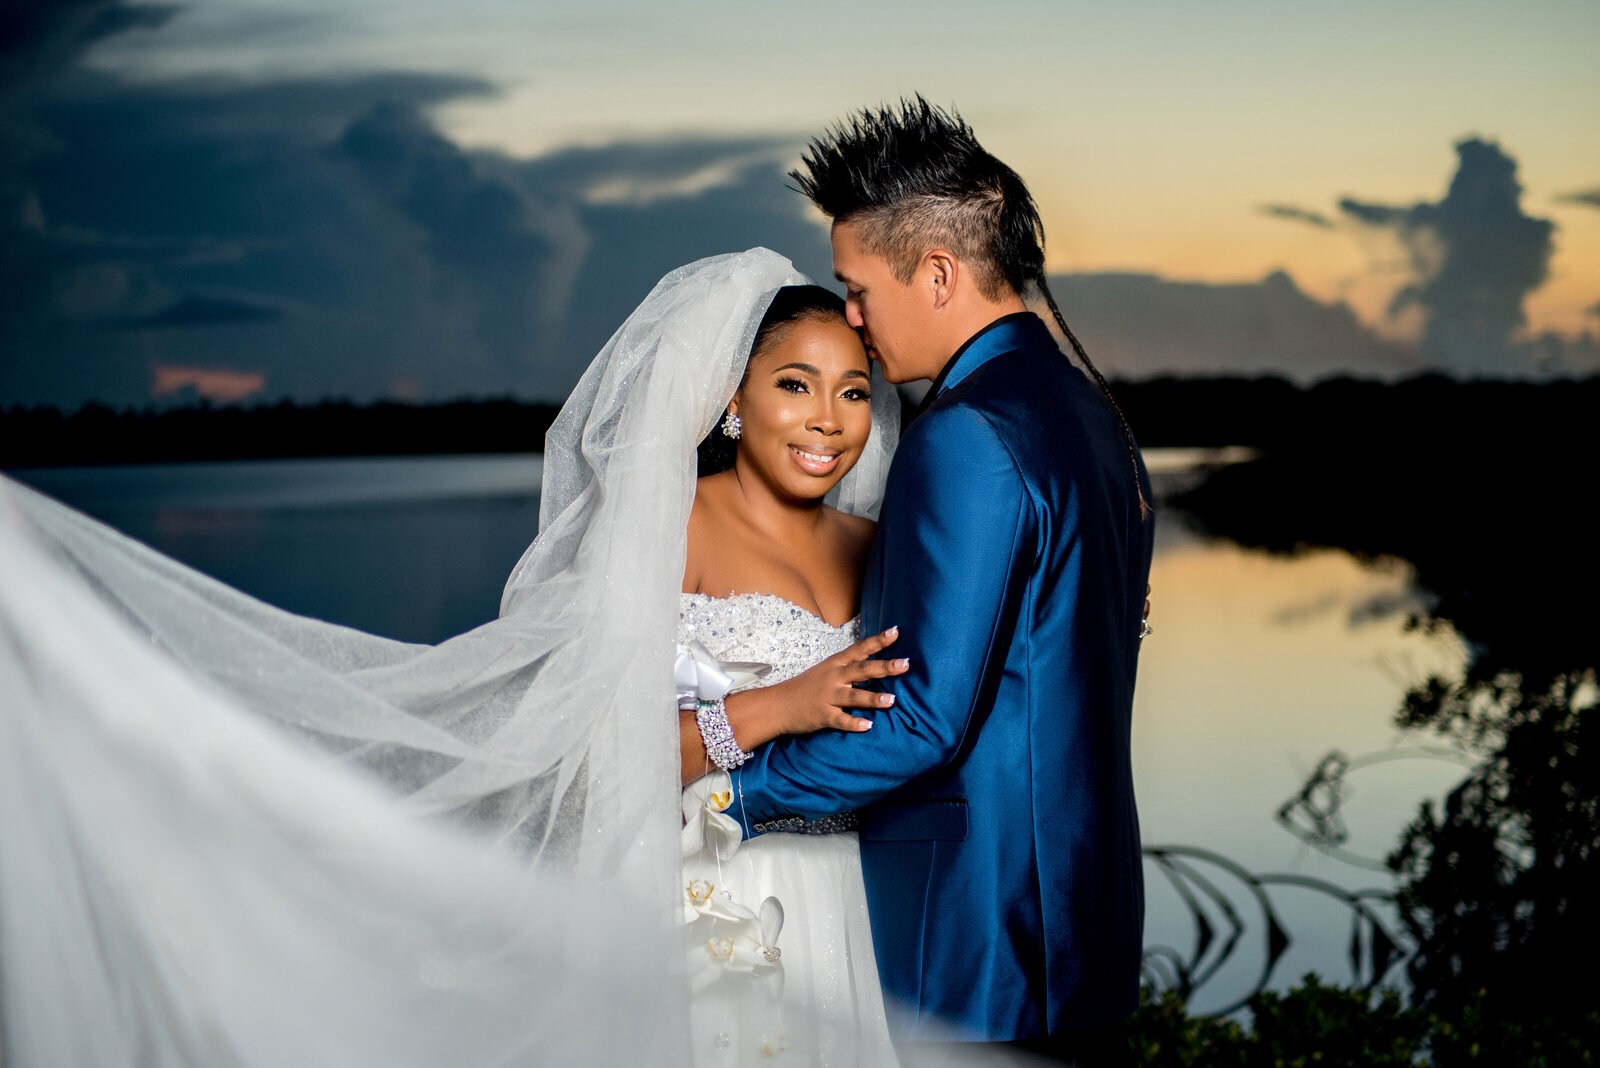 Bahamas wedding photo on the lake